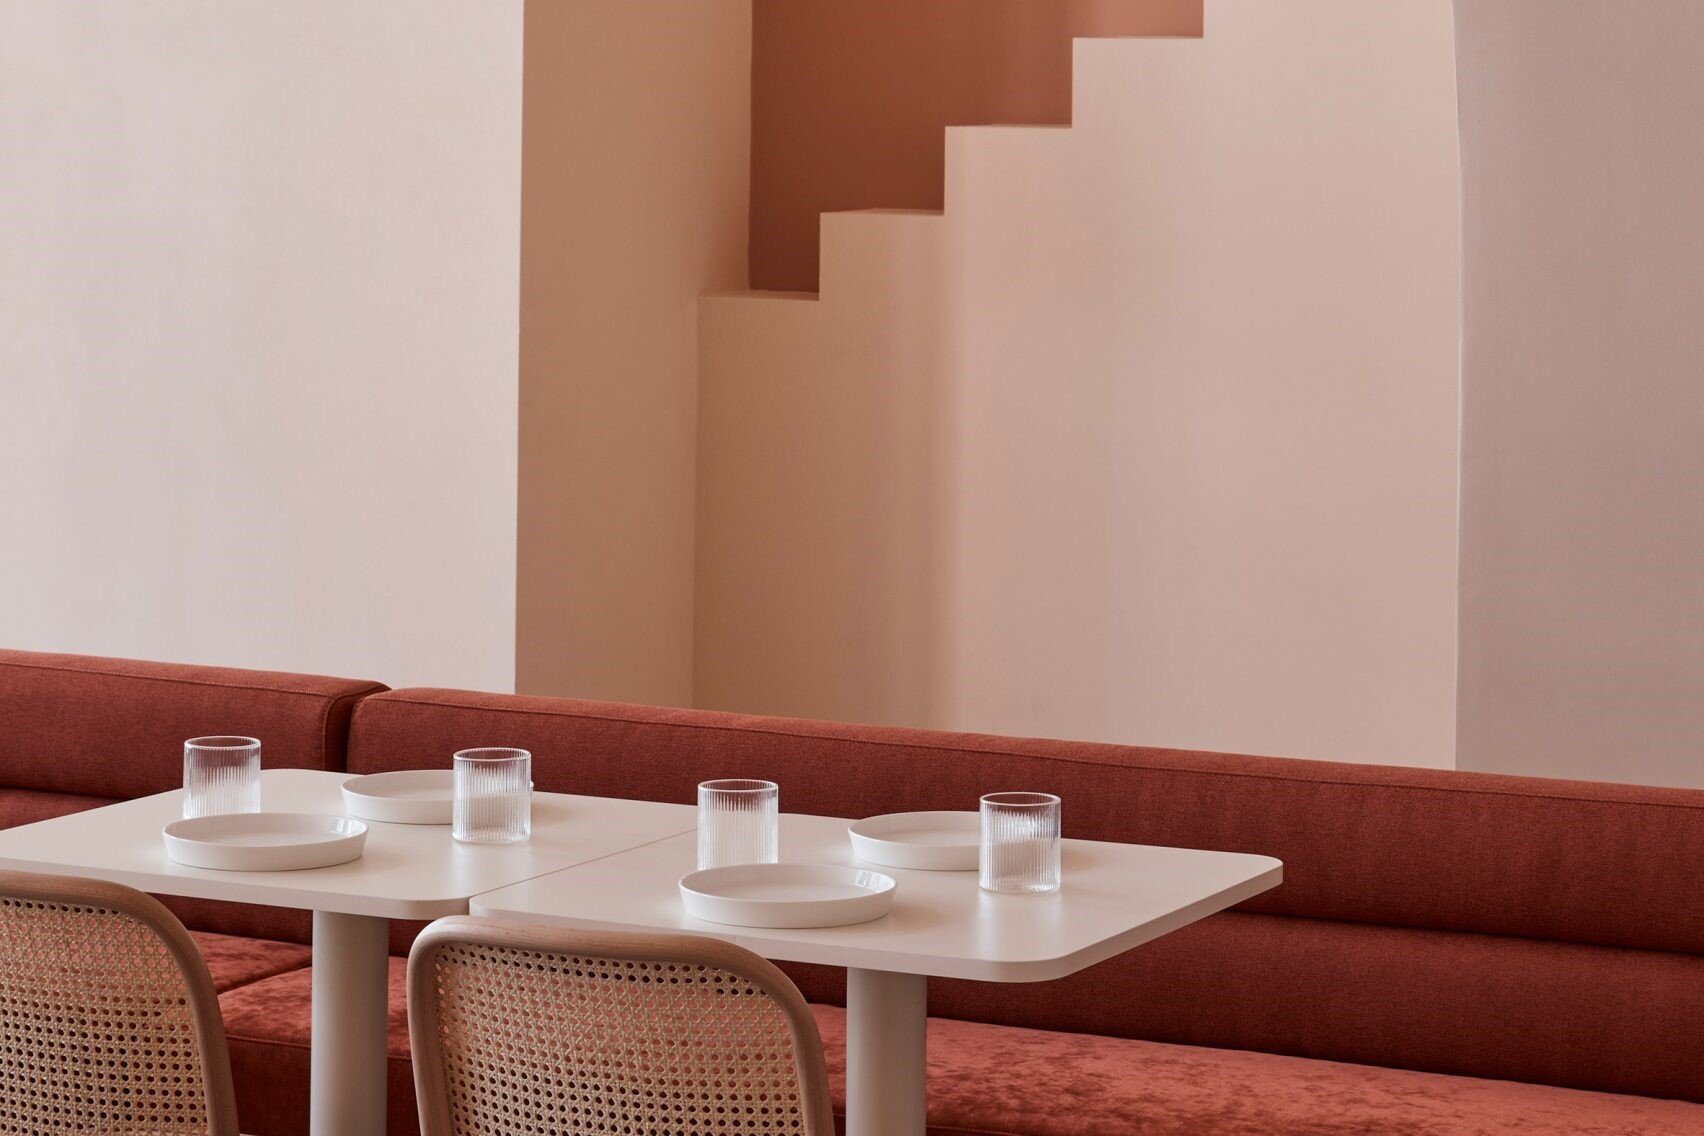 The Budapest Cafe, Biasol Design